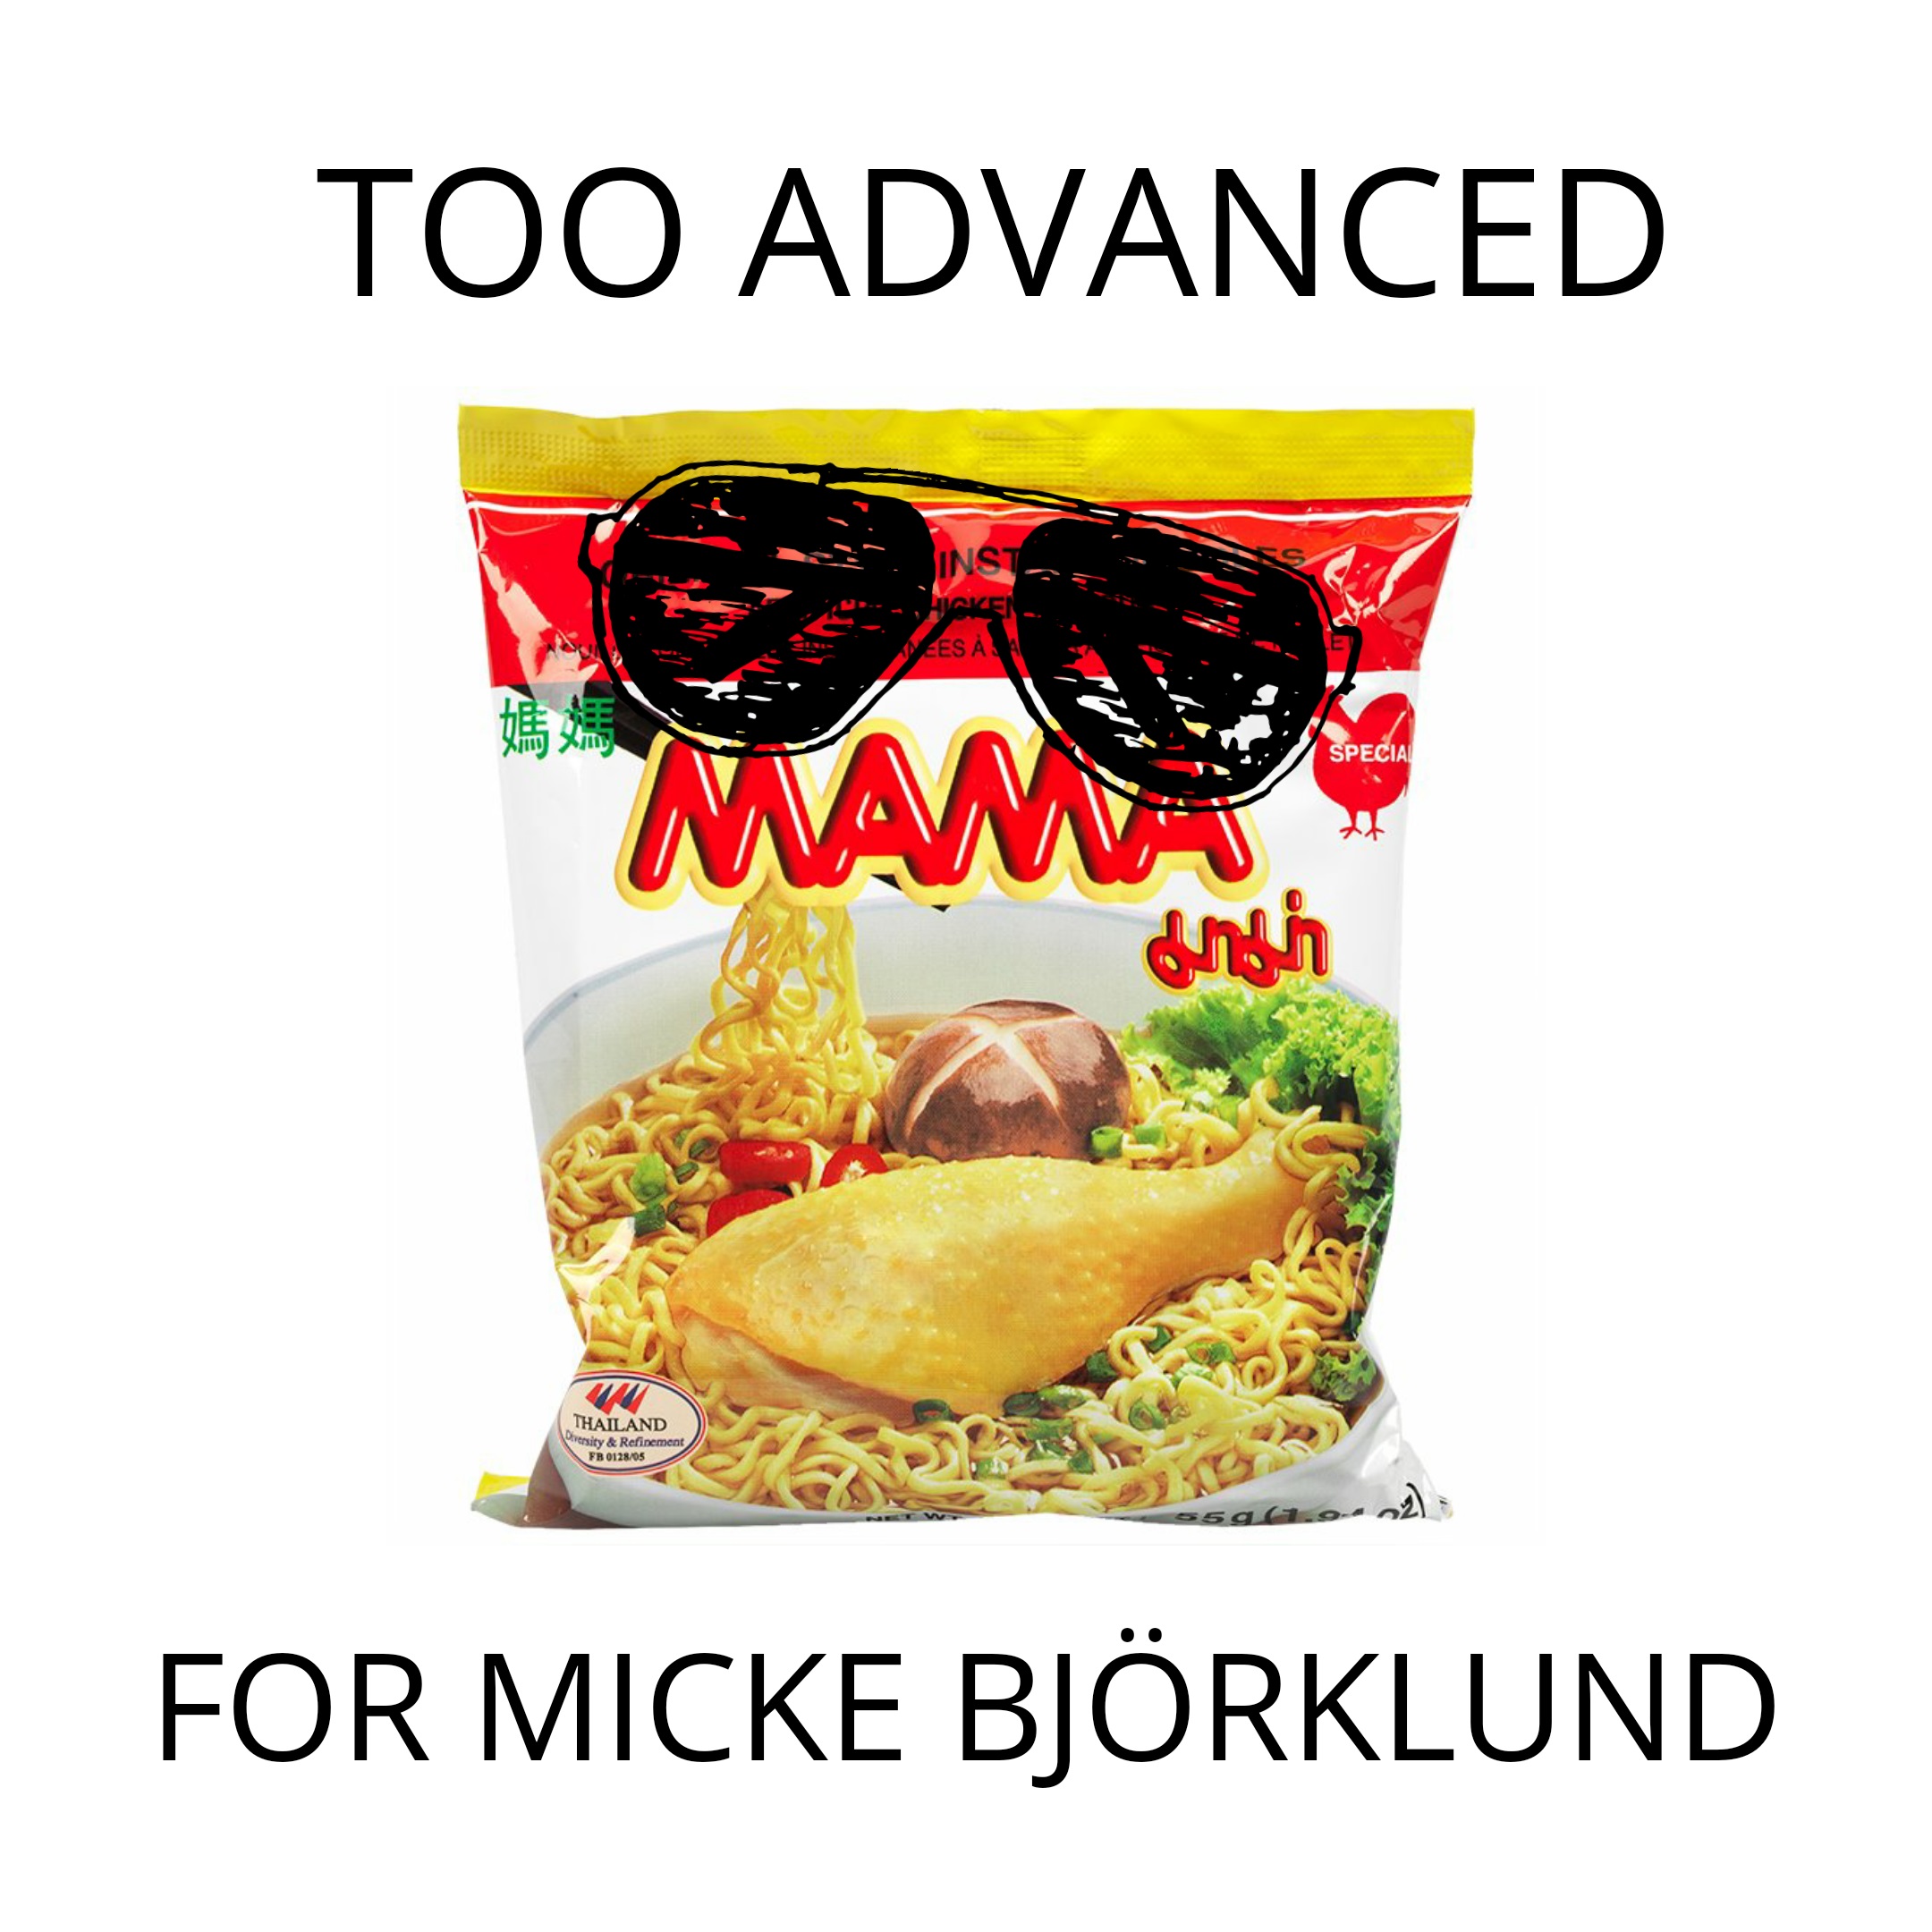 Bild på en snabbnudelförpackning och texten: Too advanced for Micke Björklund.